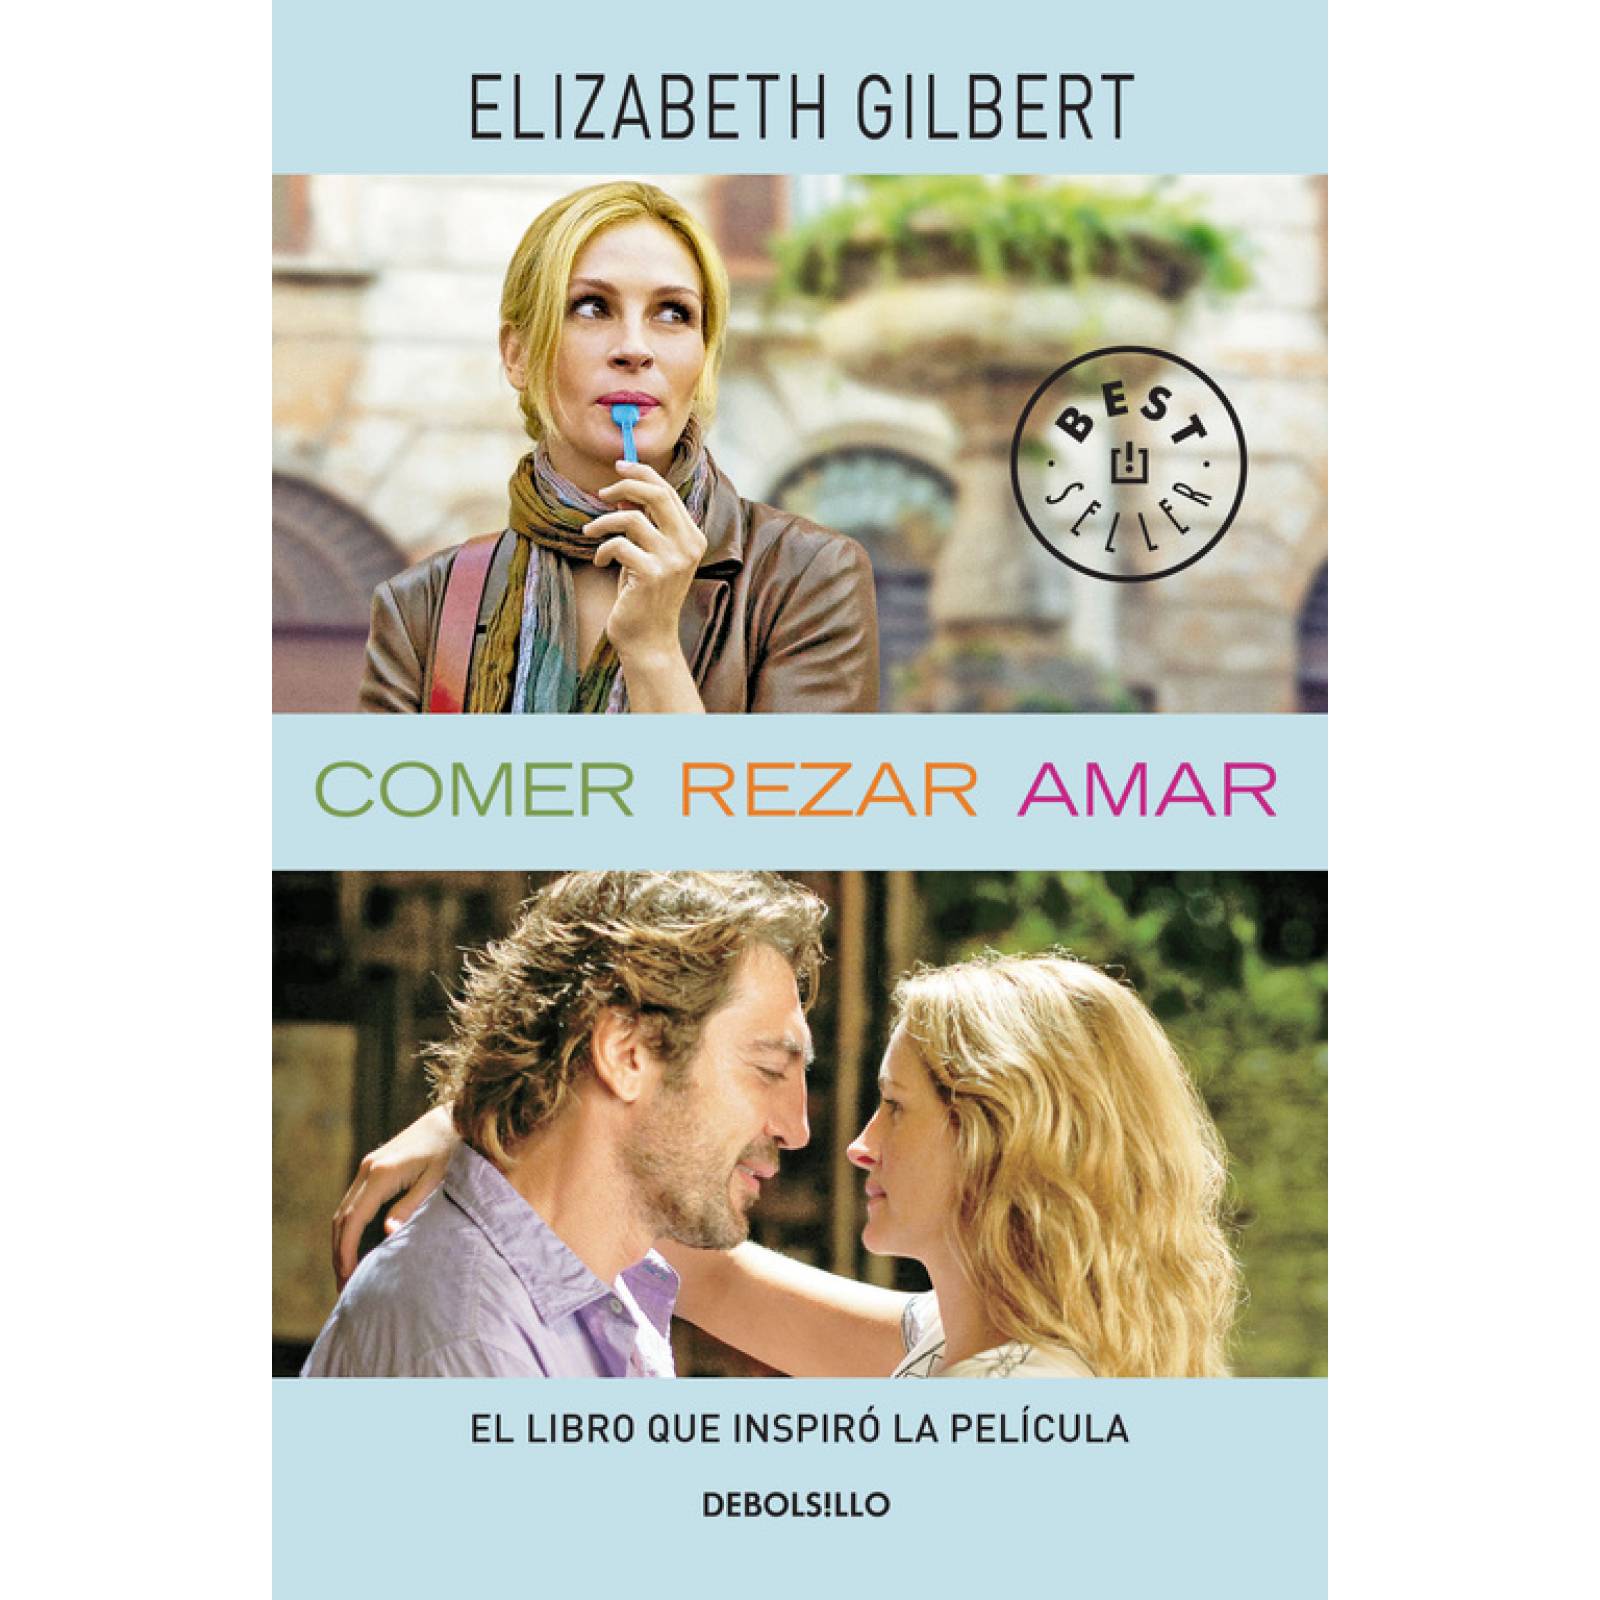 Come reza ama de Elizabeth Gilbert, Un libro, Una historia (Audio)